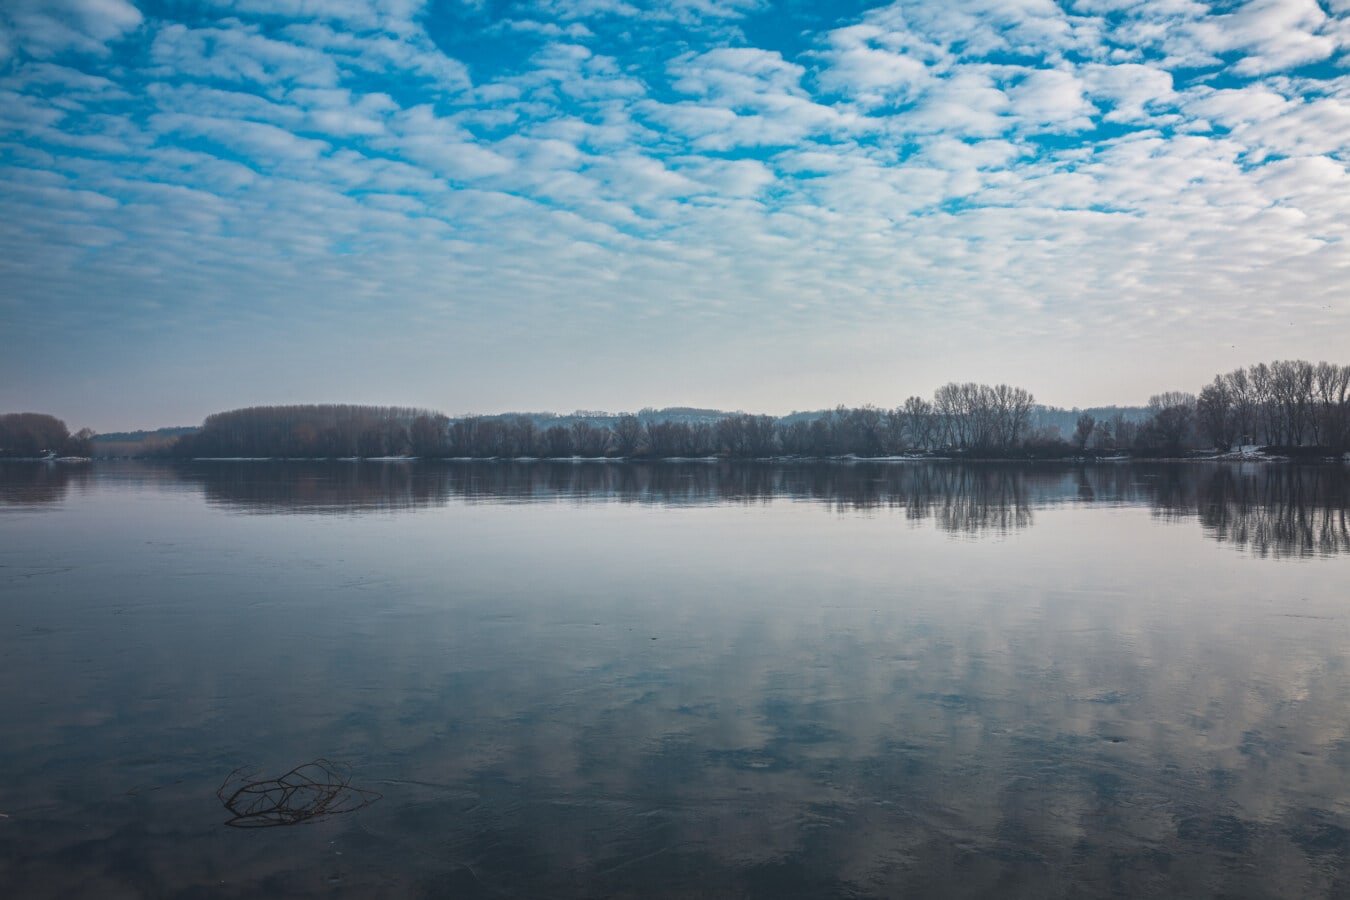 frumos, Lacul, reflecţie, faleza, cer albastru, peisaj, pădure, pe malul lacului, mal, apa